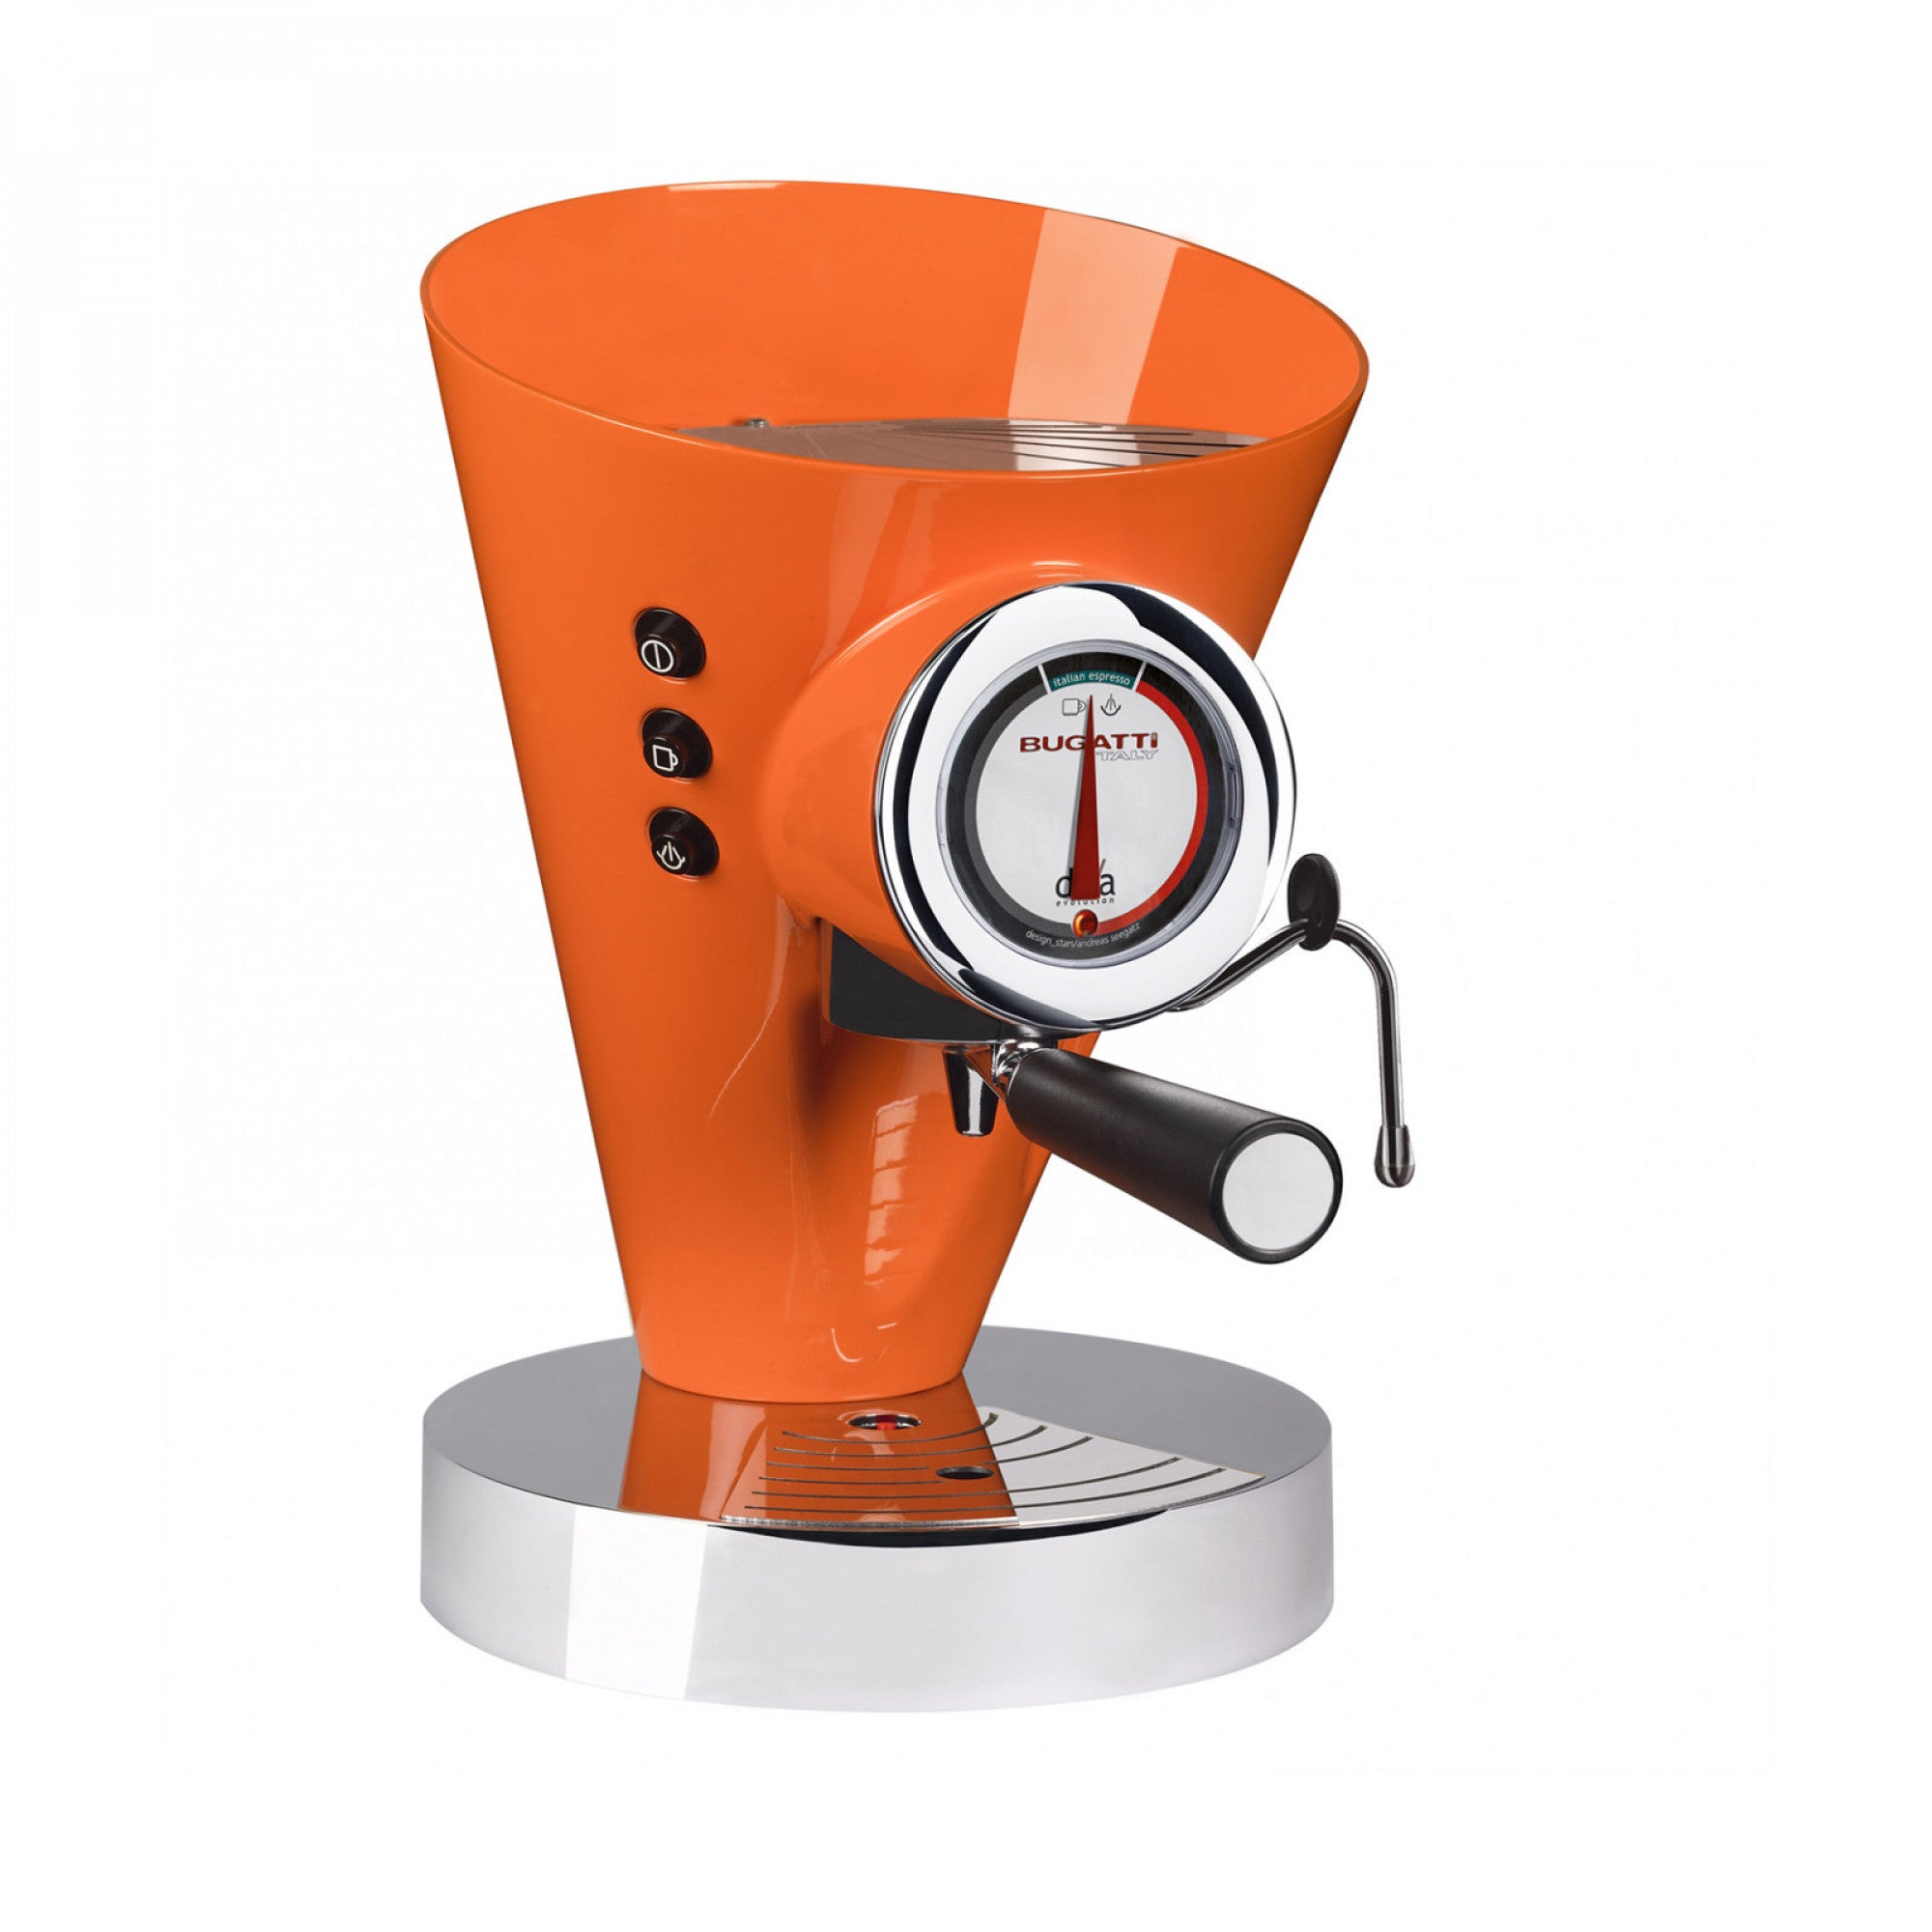 BUGATTI, Diva Evolution, Espresso and Cappuccino Coffee Machine, for Ground Coffee Powder and Pods, Non-Stop Steam Function, 15 bar, 950 W, 0.8 Liter Capacity, Elegant Design